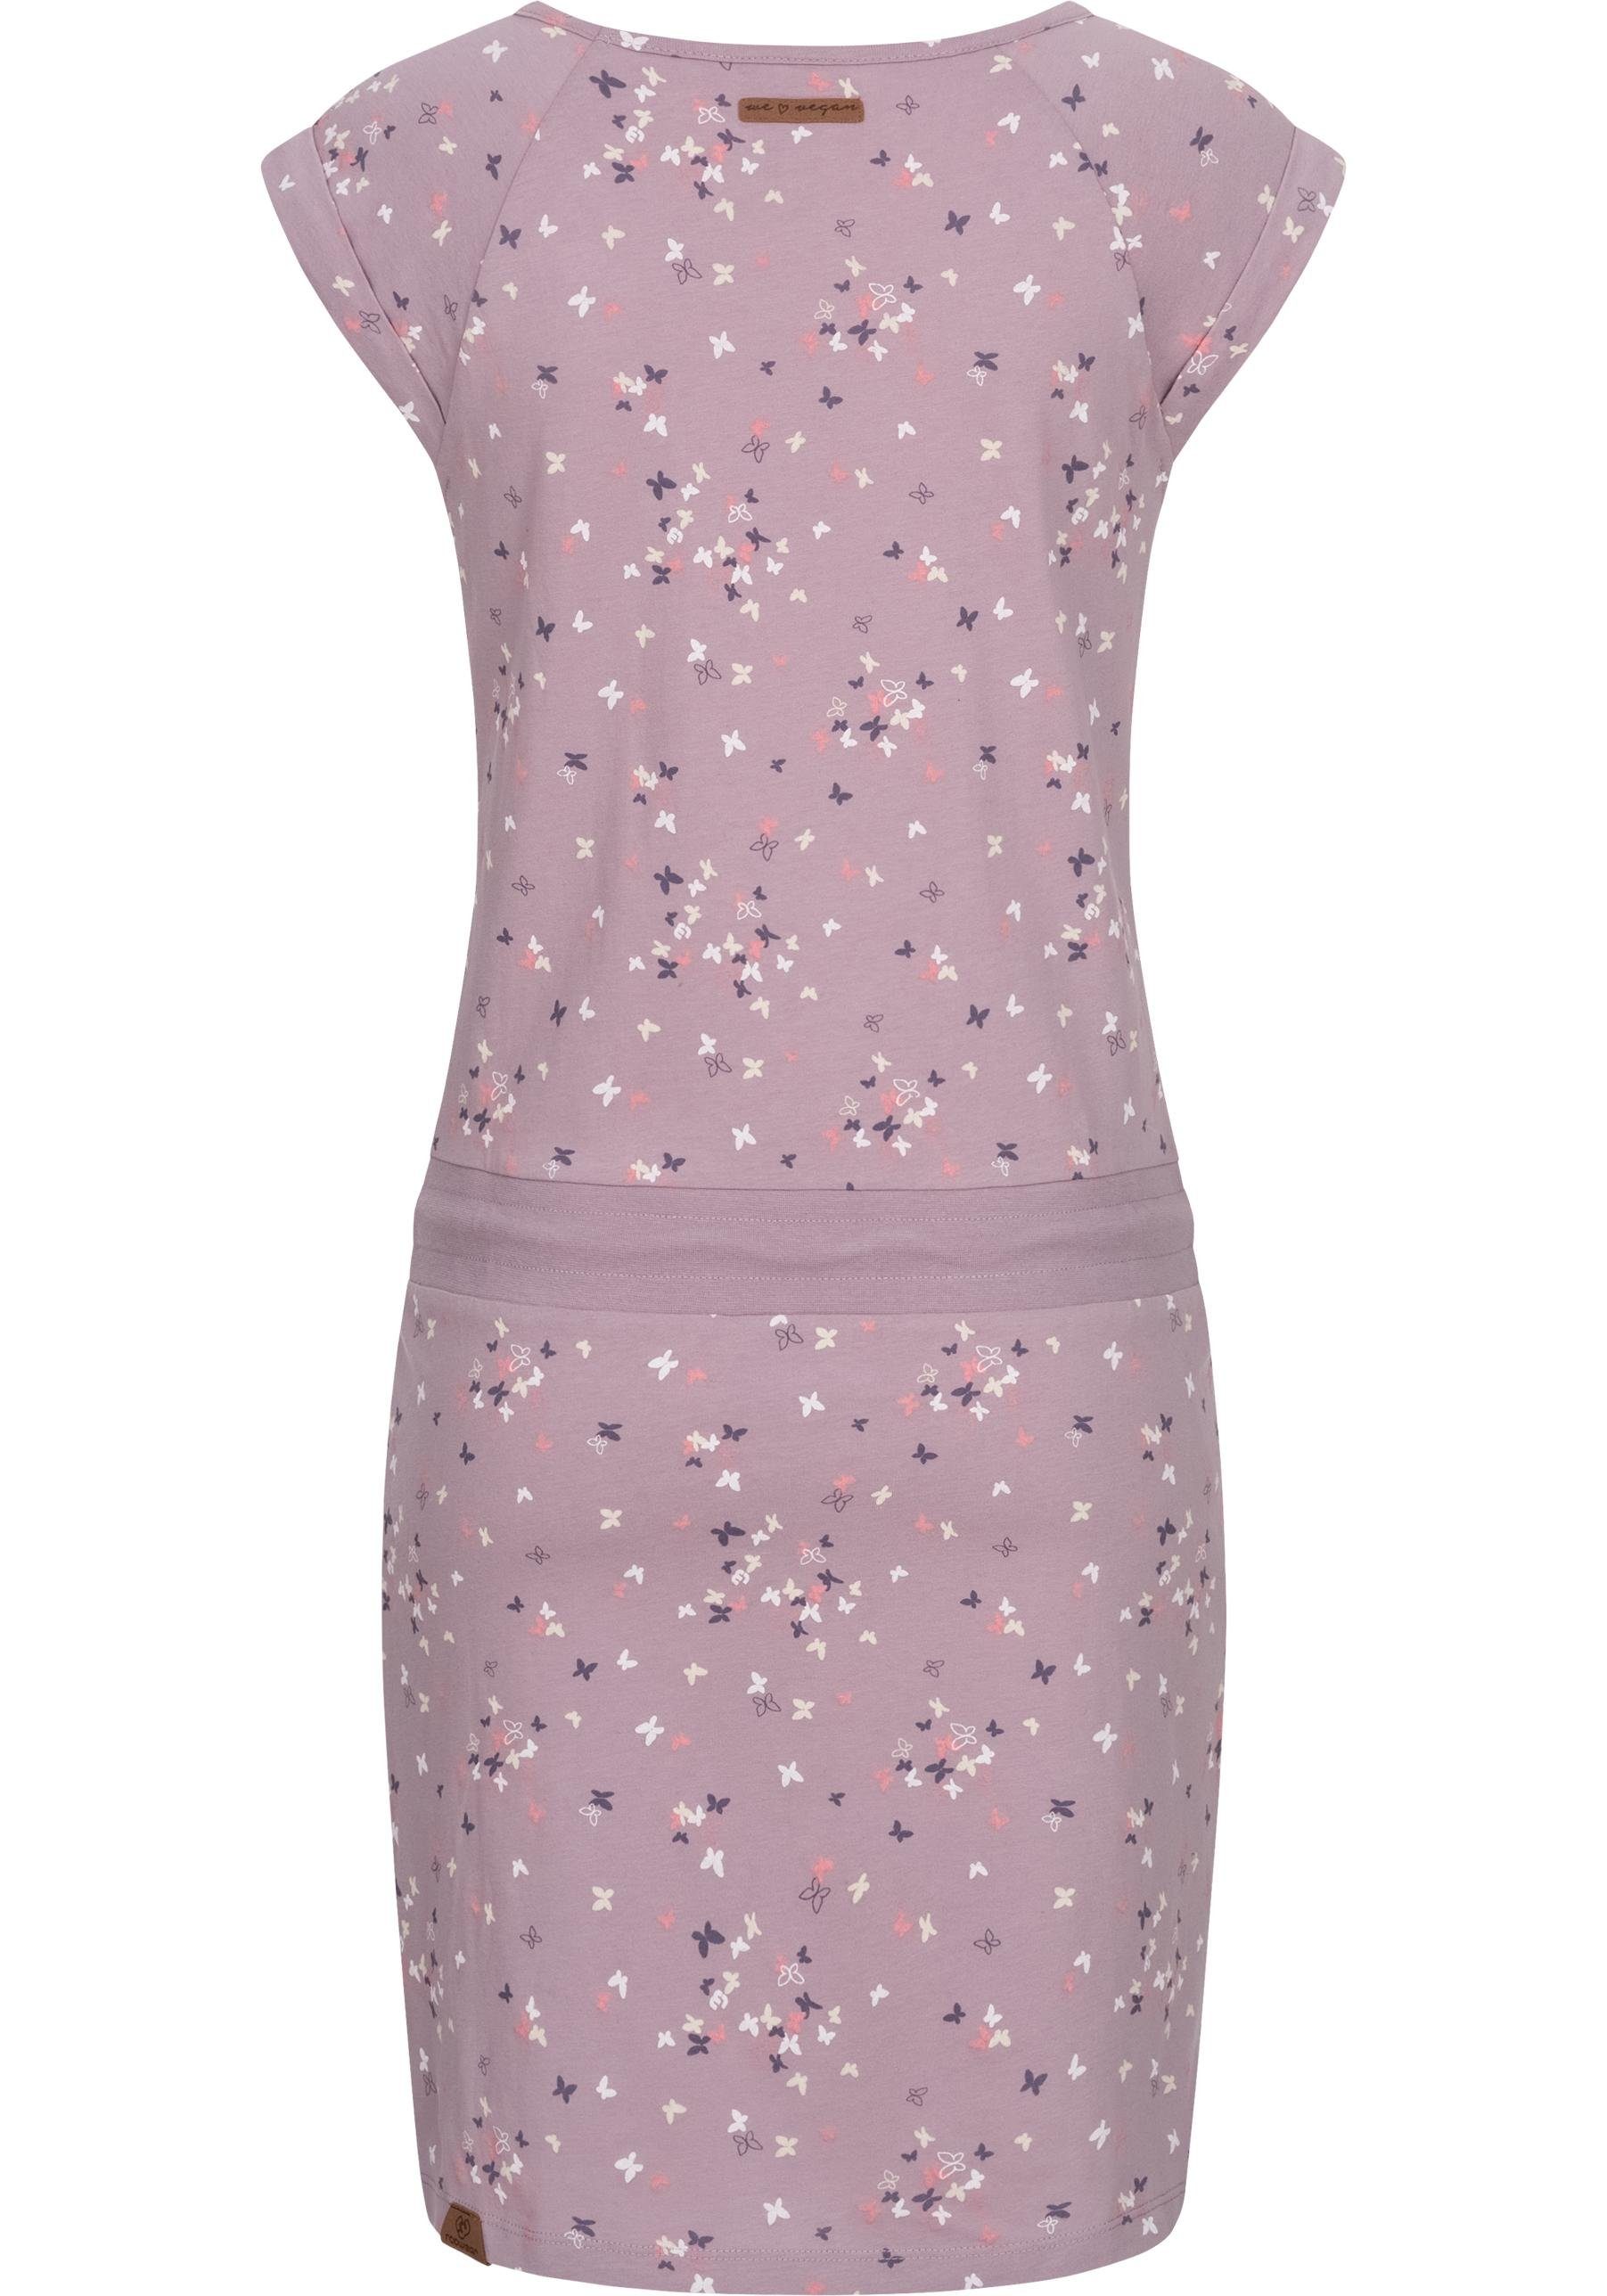 Ragwear Sommerkleid Penelope leichtes Print mit lavendel Kleid Baumwoll